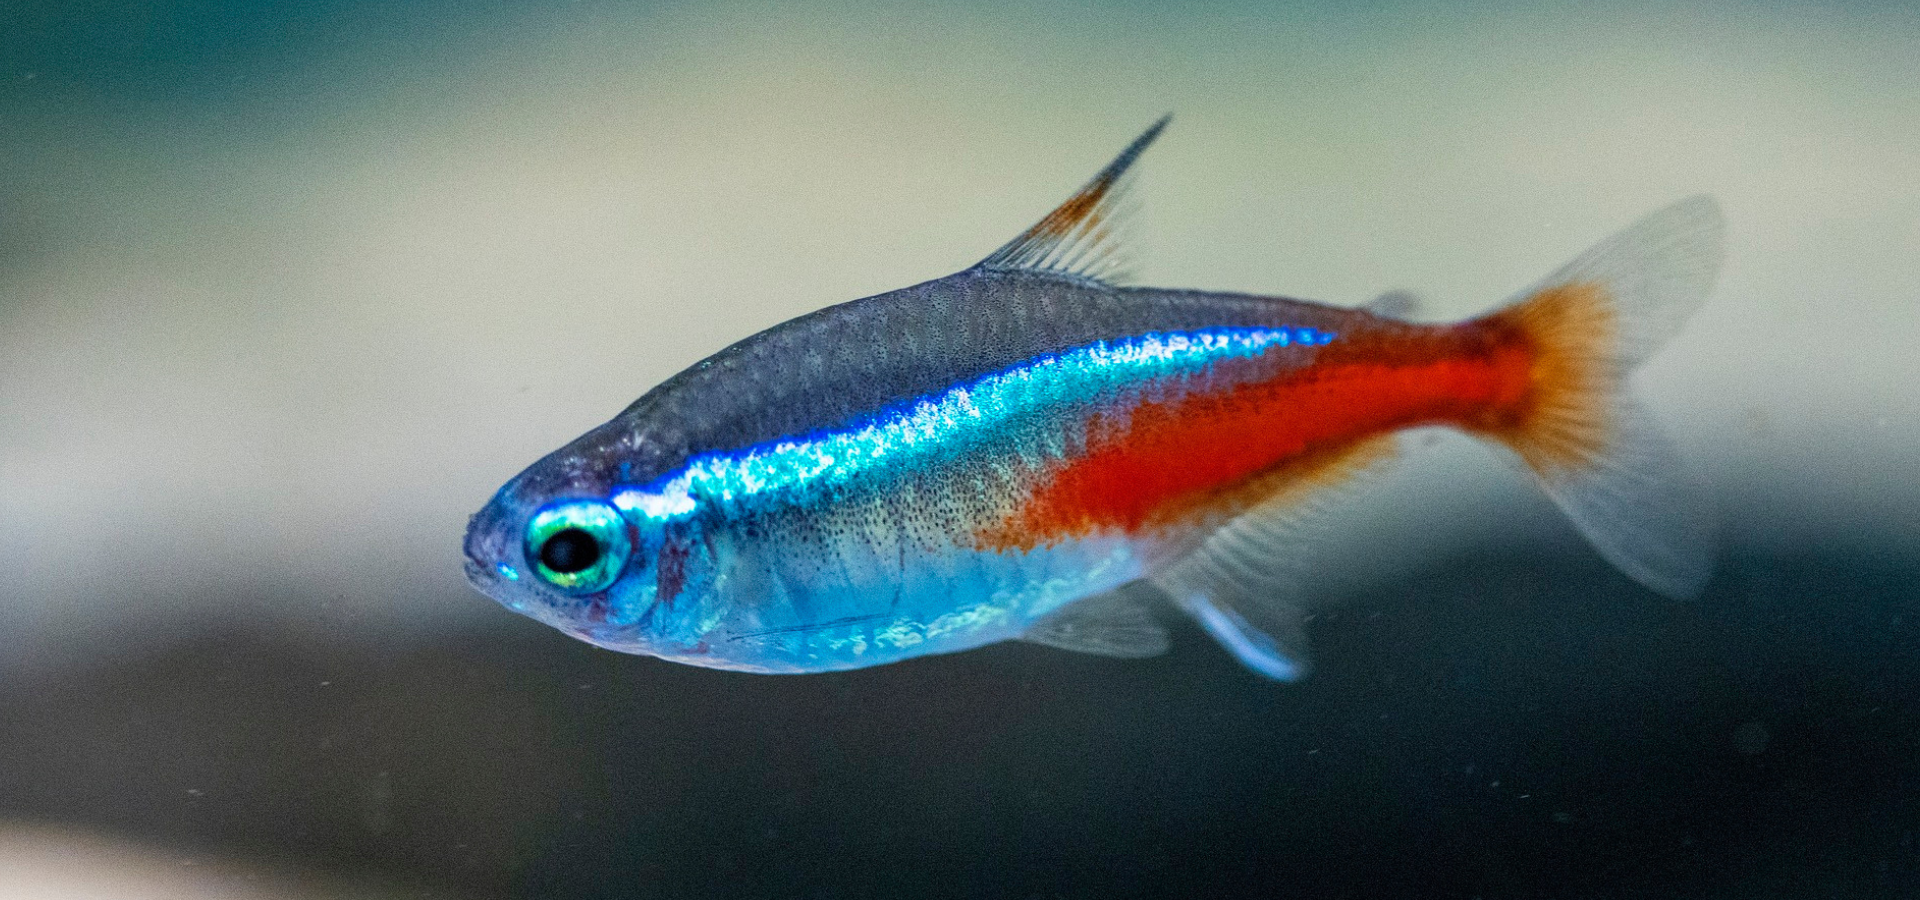 Almindelig neon - neontetra - en af de mest populære tropiske fisk i selskabsakvariet